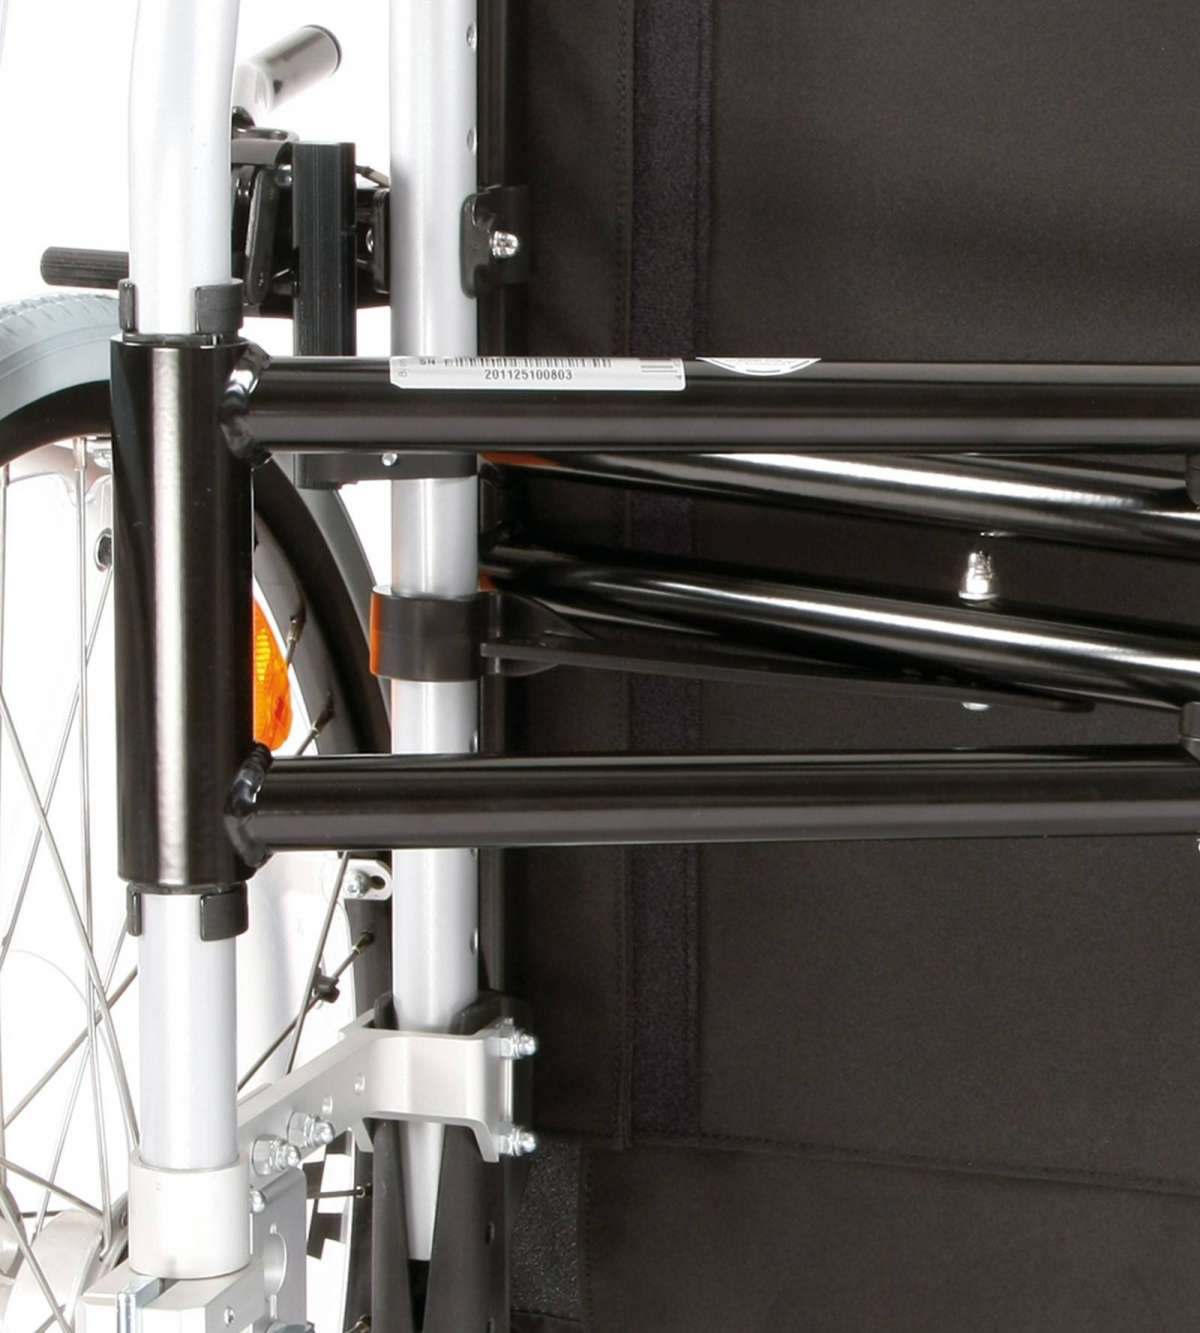 Кресло-коляска, предназначенная для пациентов с большой массой тела Старт XXL